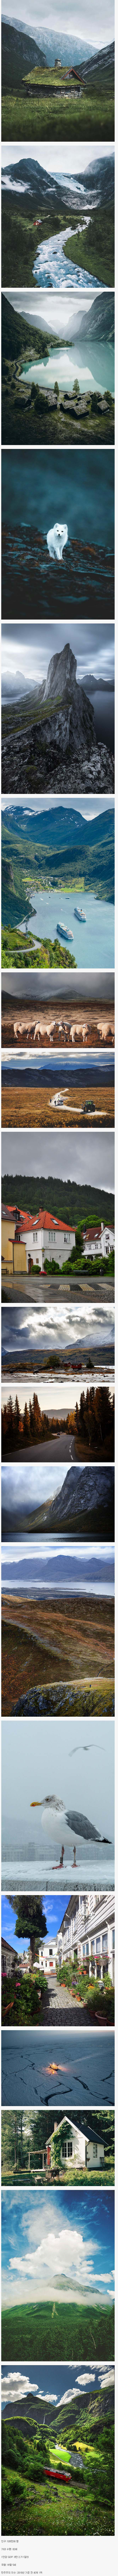  깨끗하고 아름다운 북유럽 국가 노르웨이의 풍경